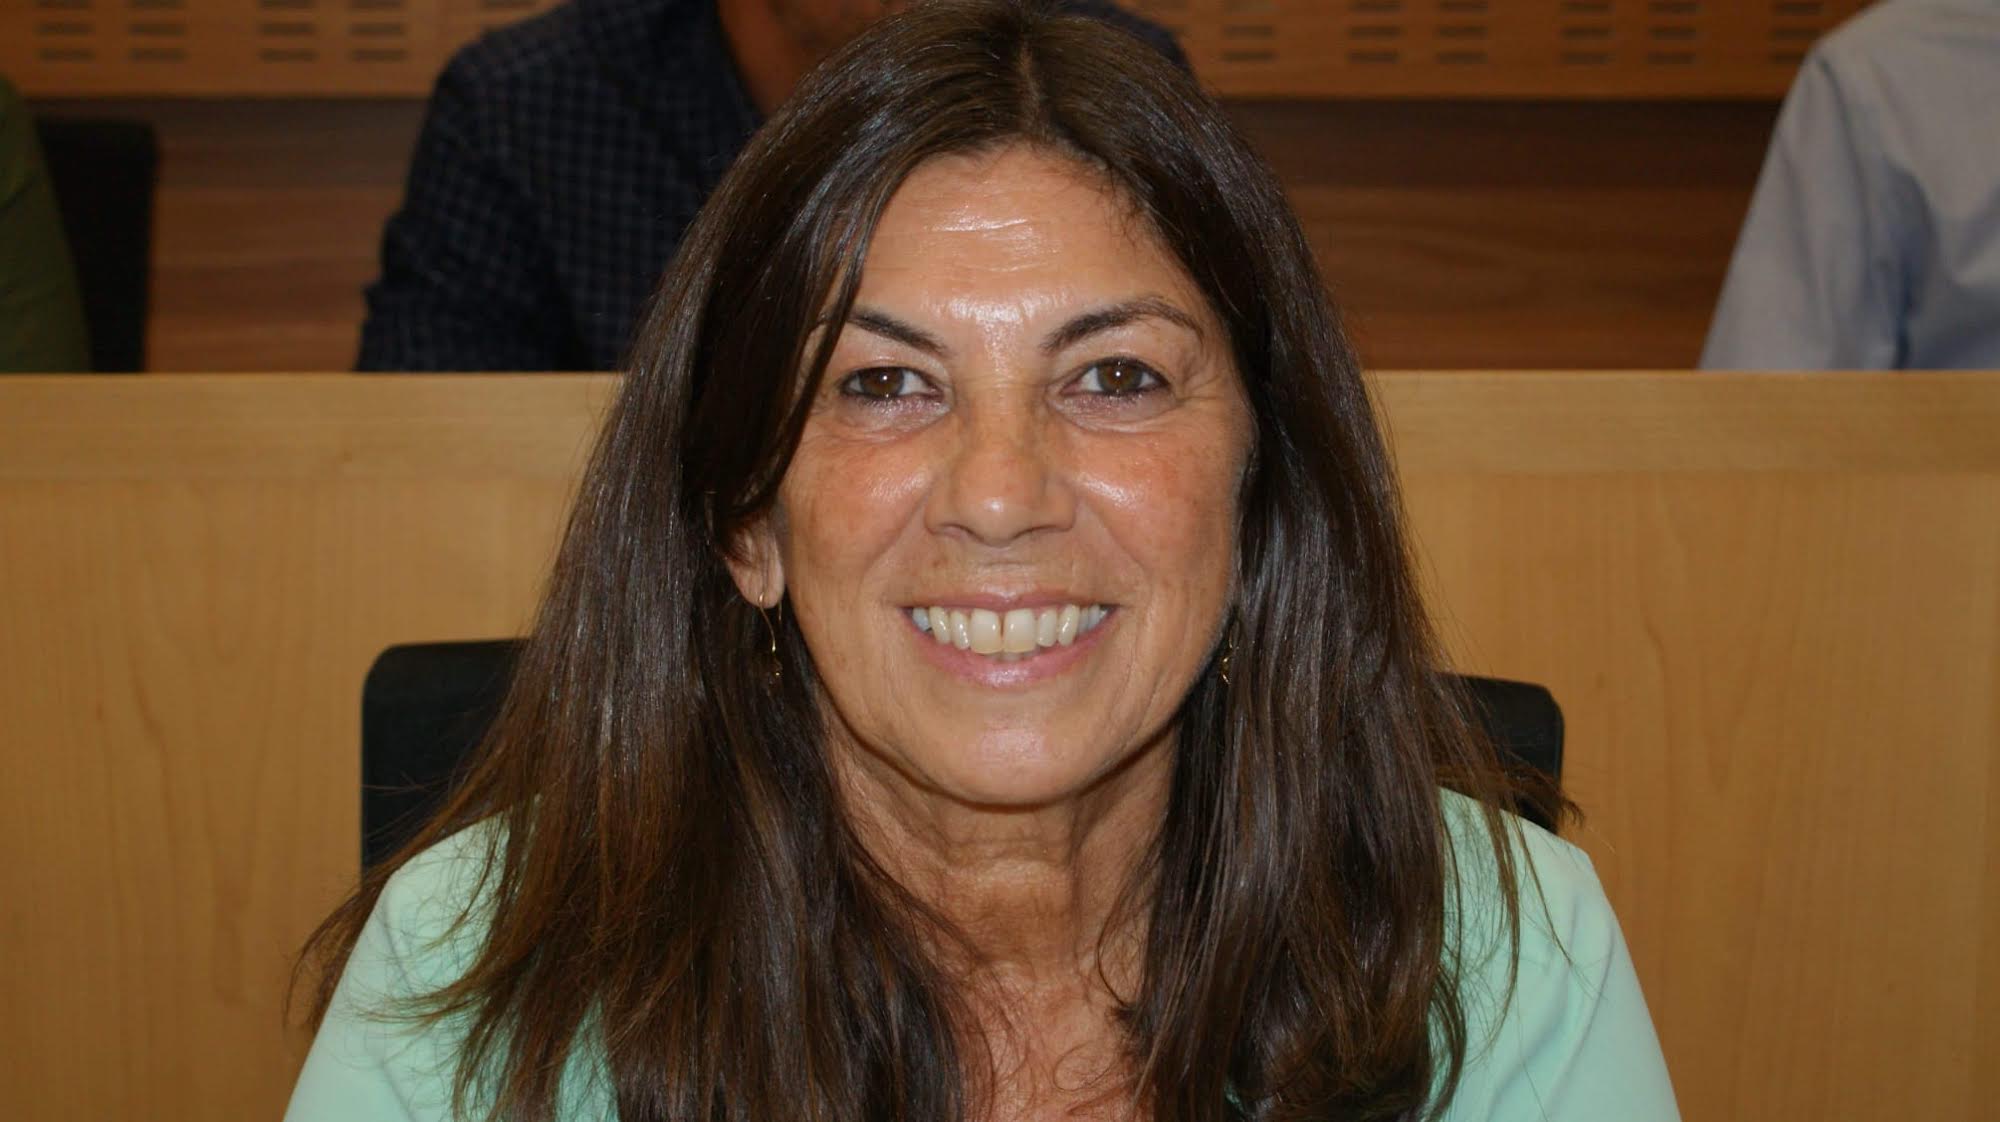 Matilde Roselló es concejala de Izquierda Unida en el Ayuntamiento de El Puerto de Santa María.